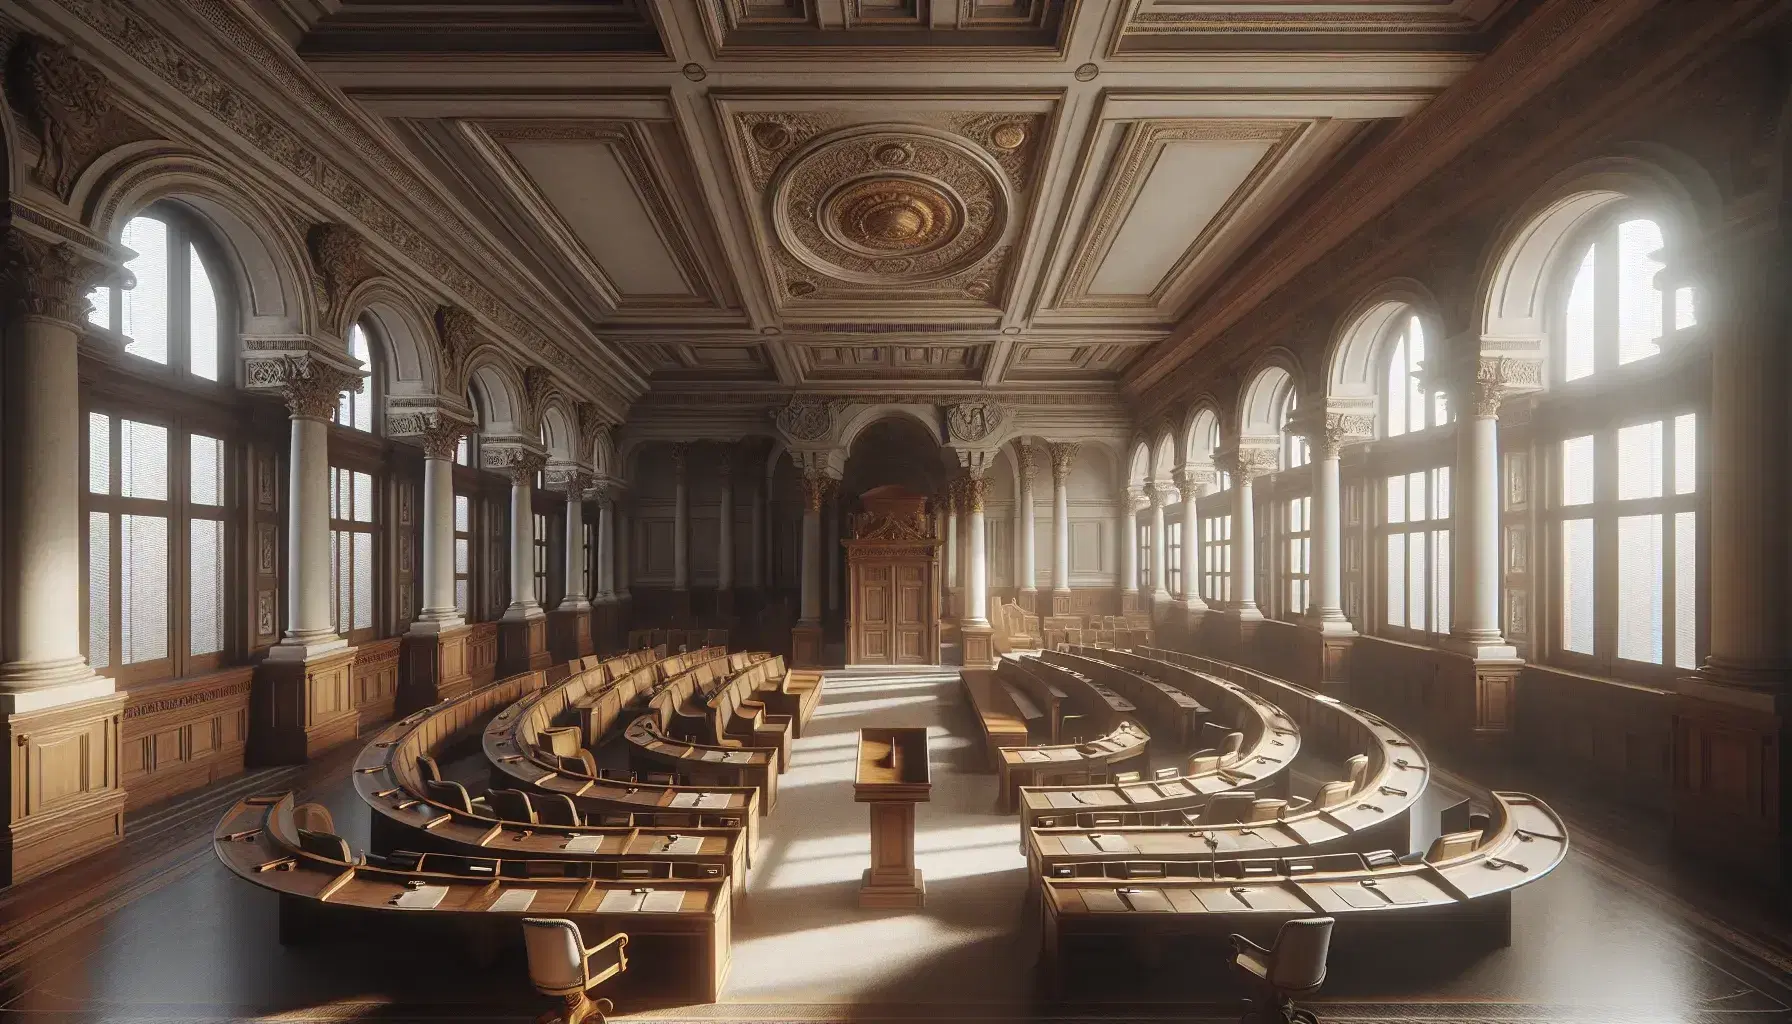 Camera parlamentare storica vuota con scrivanie in legno, soffitto stuccato e colonne corinzie, illuminata da luce naturale.